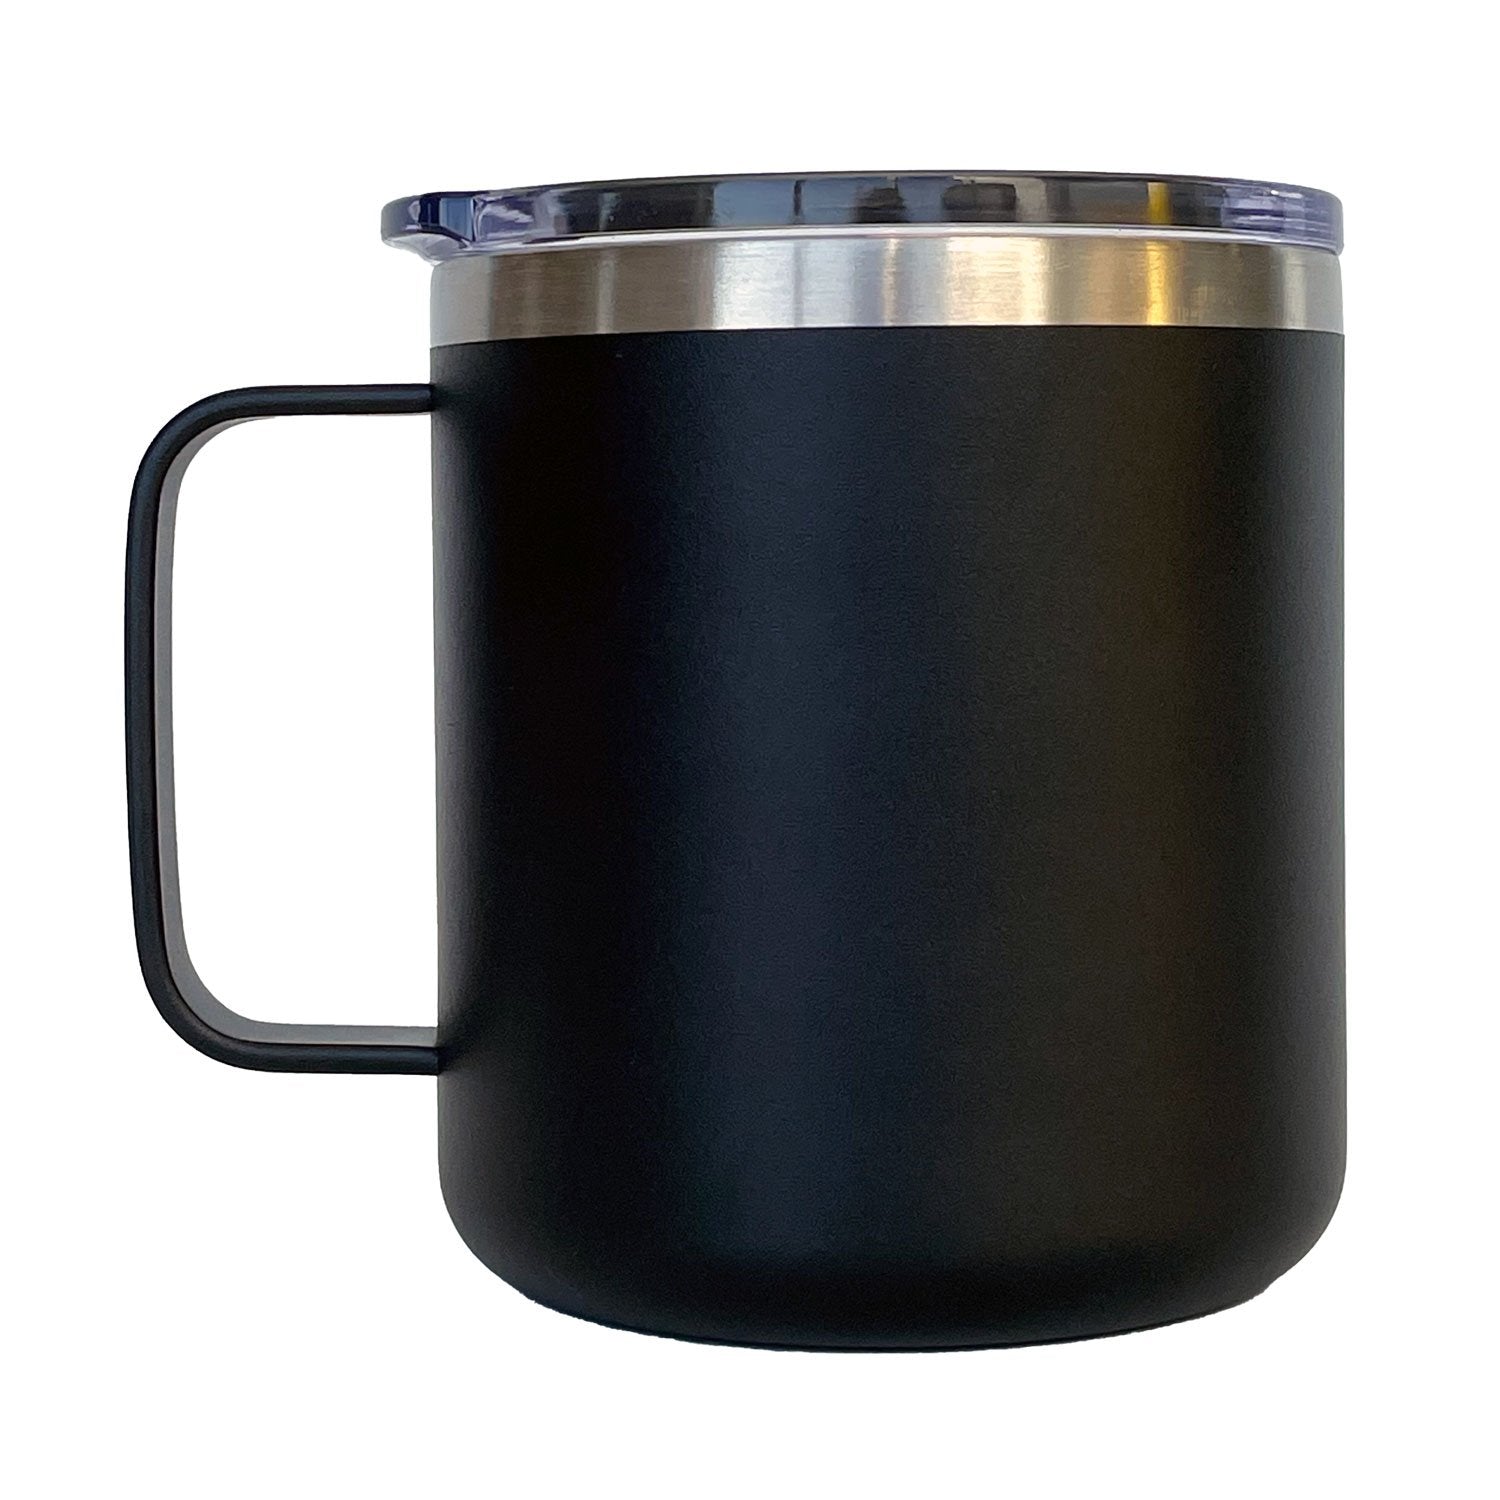 https://www.boyerscoffee.com/cdn/shop/products/boyers-mug-02-back-1500x1500.jpg?v=1633636829&width=1500